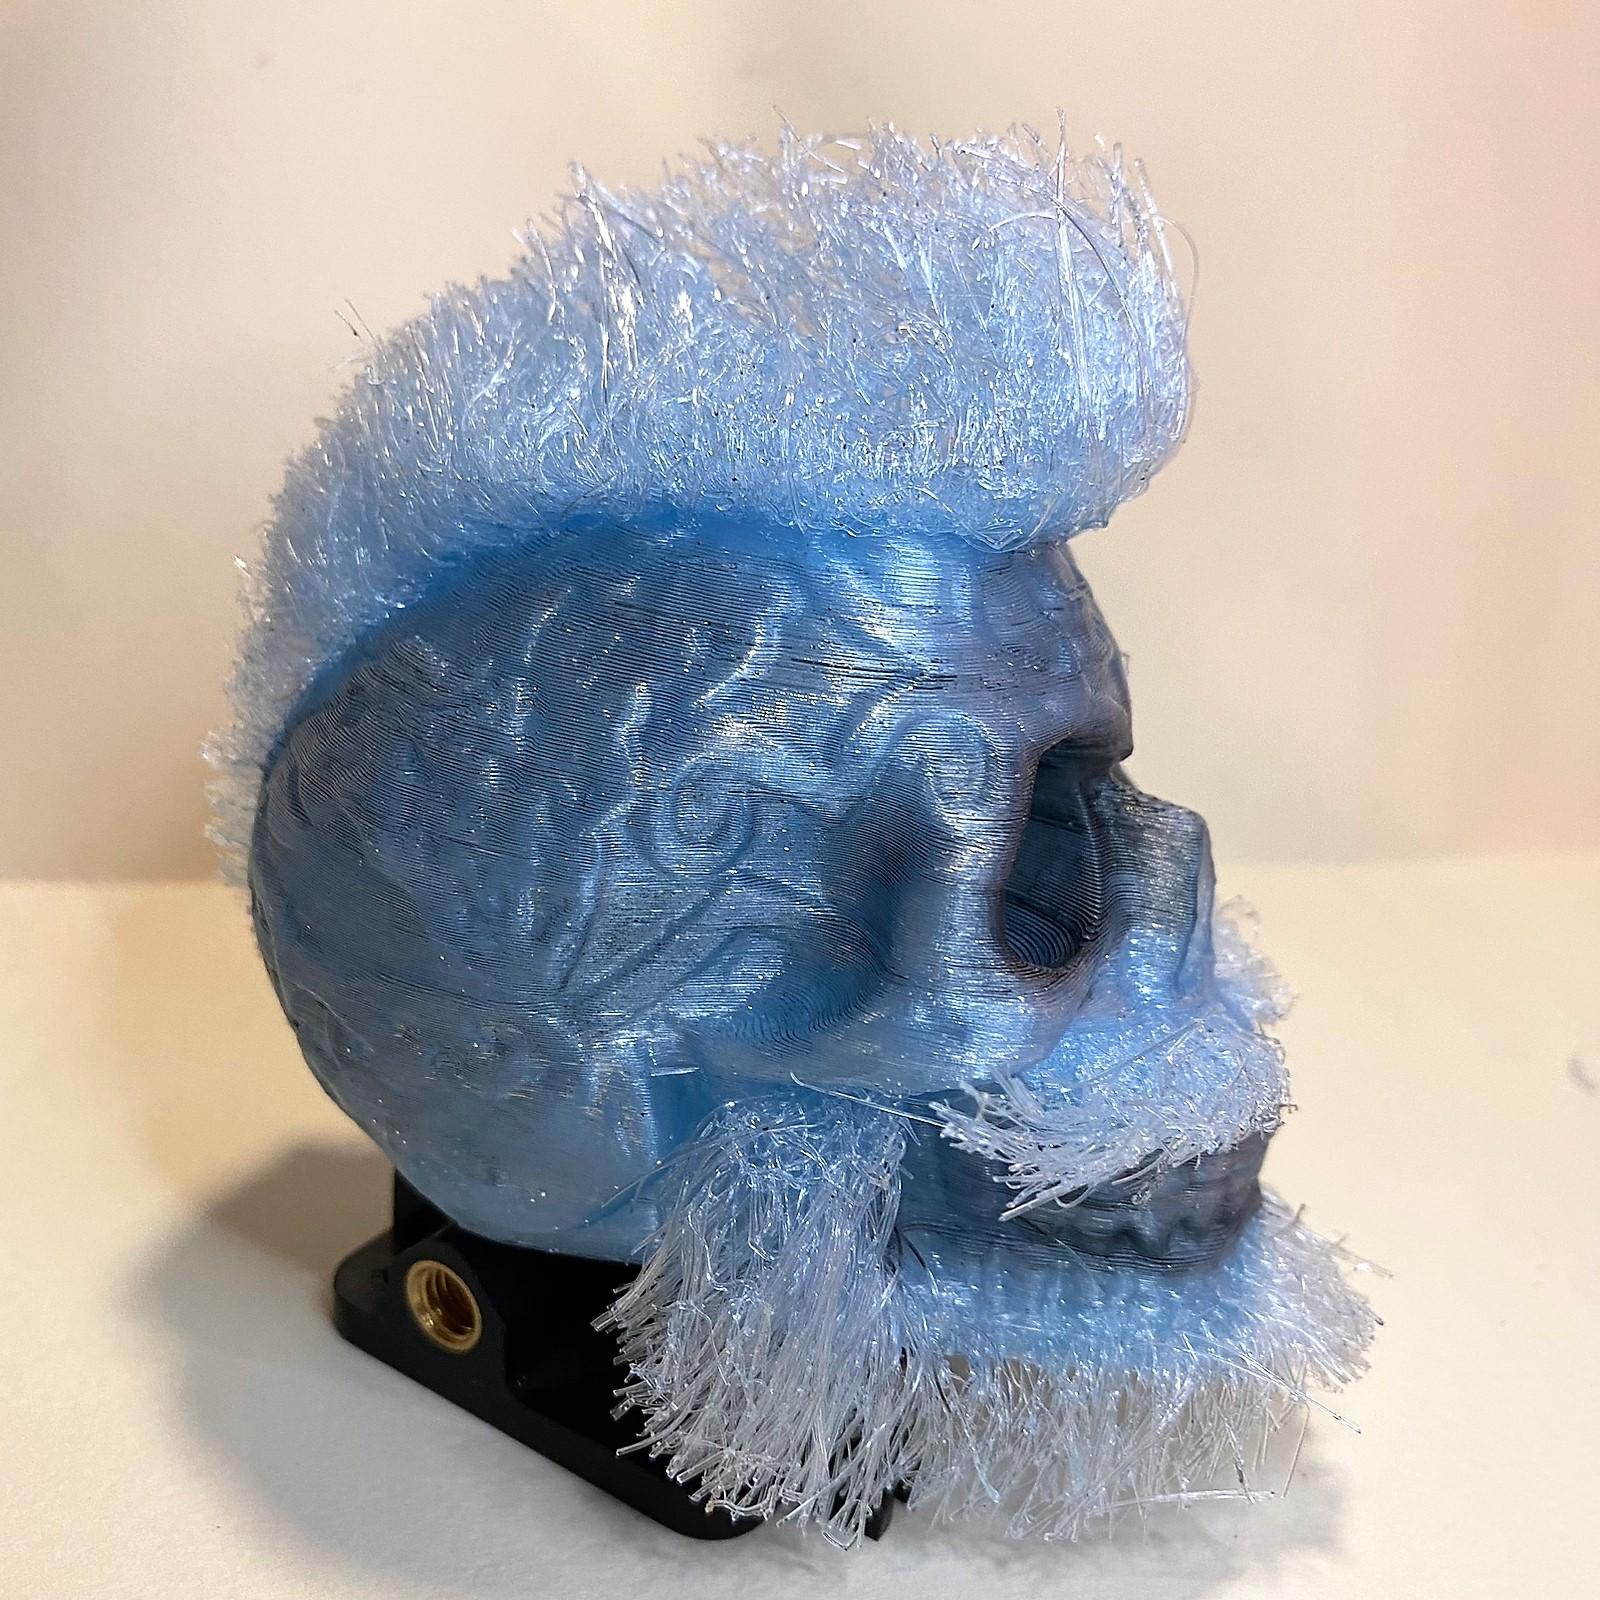 Hairify Celcit Skull .stl 3d model